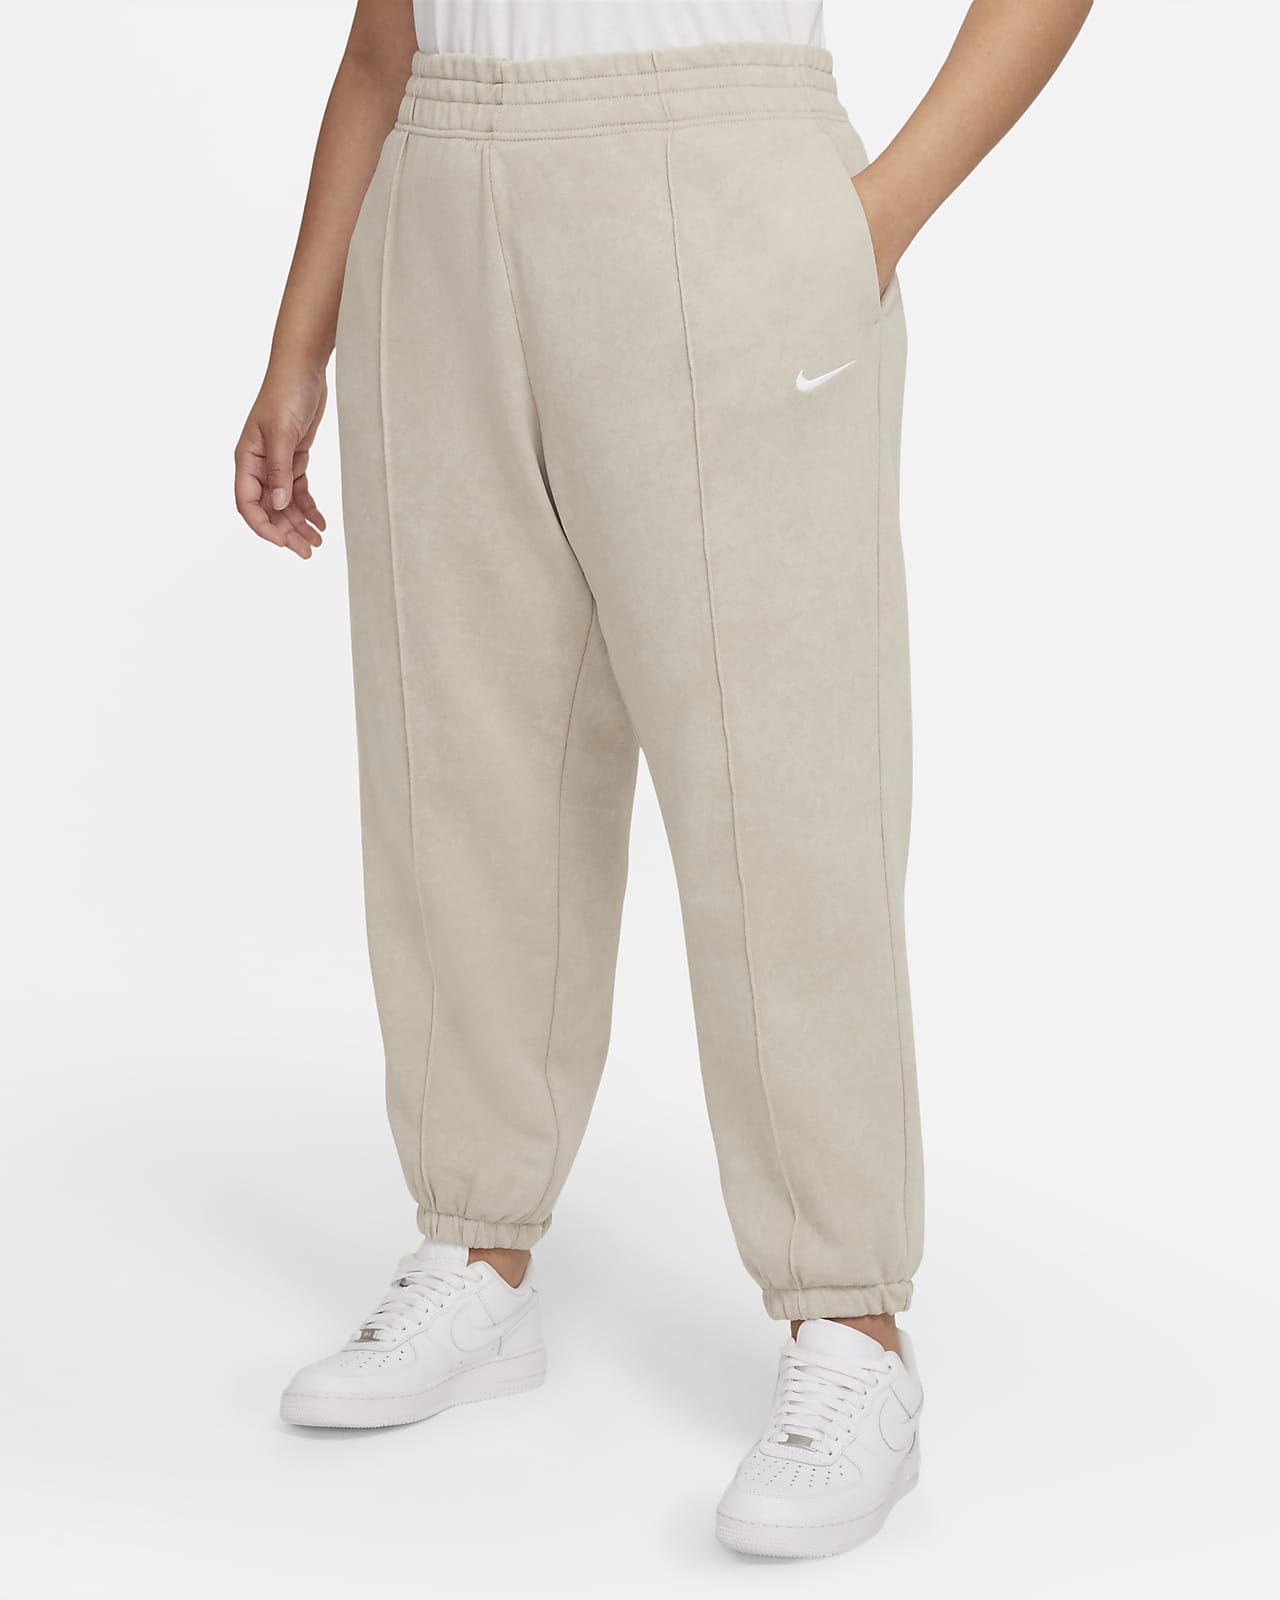 Pantalon en tissu Fleece délavé Nike Sportswear Essential Collection pour Femme (grande taille)